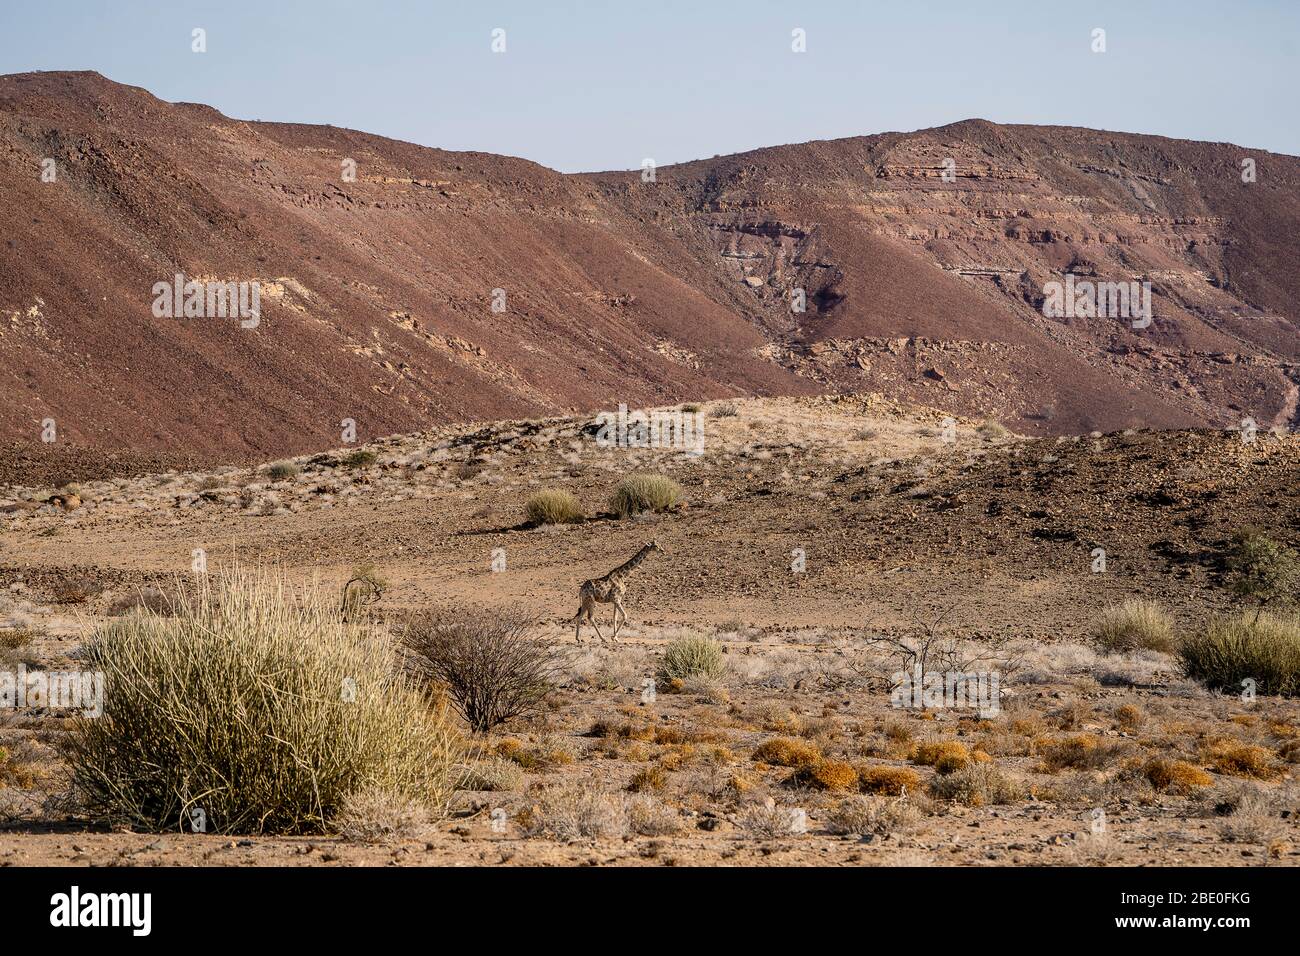 Una jirafa camina en un paisaje árido con colinas rocosas Foto de stock